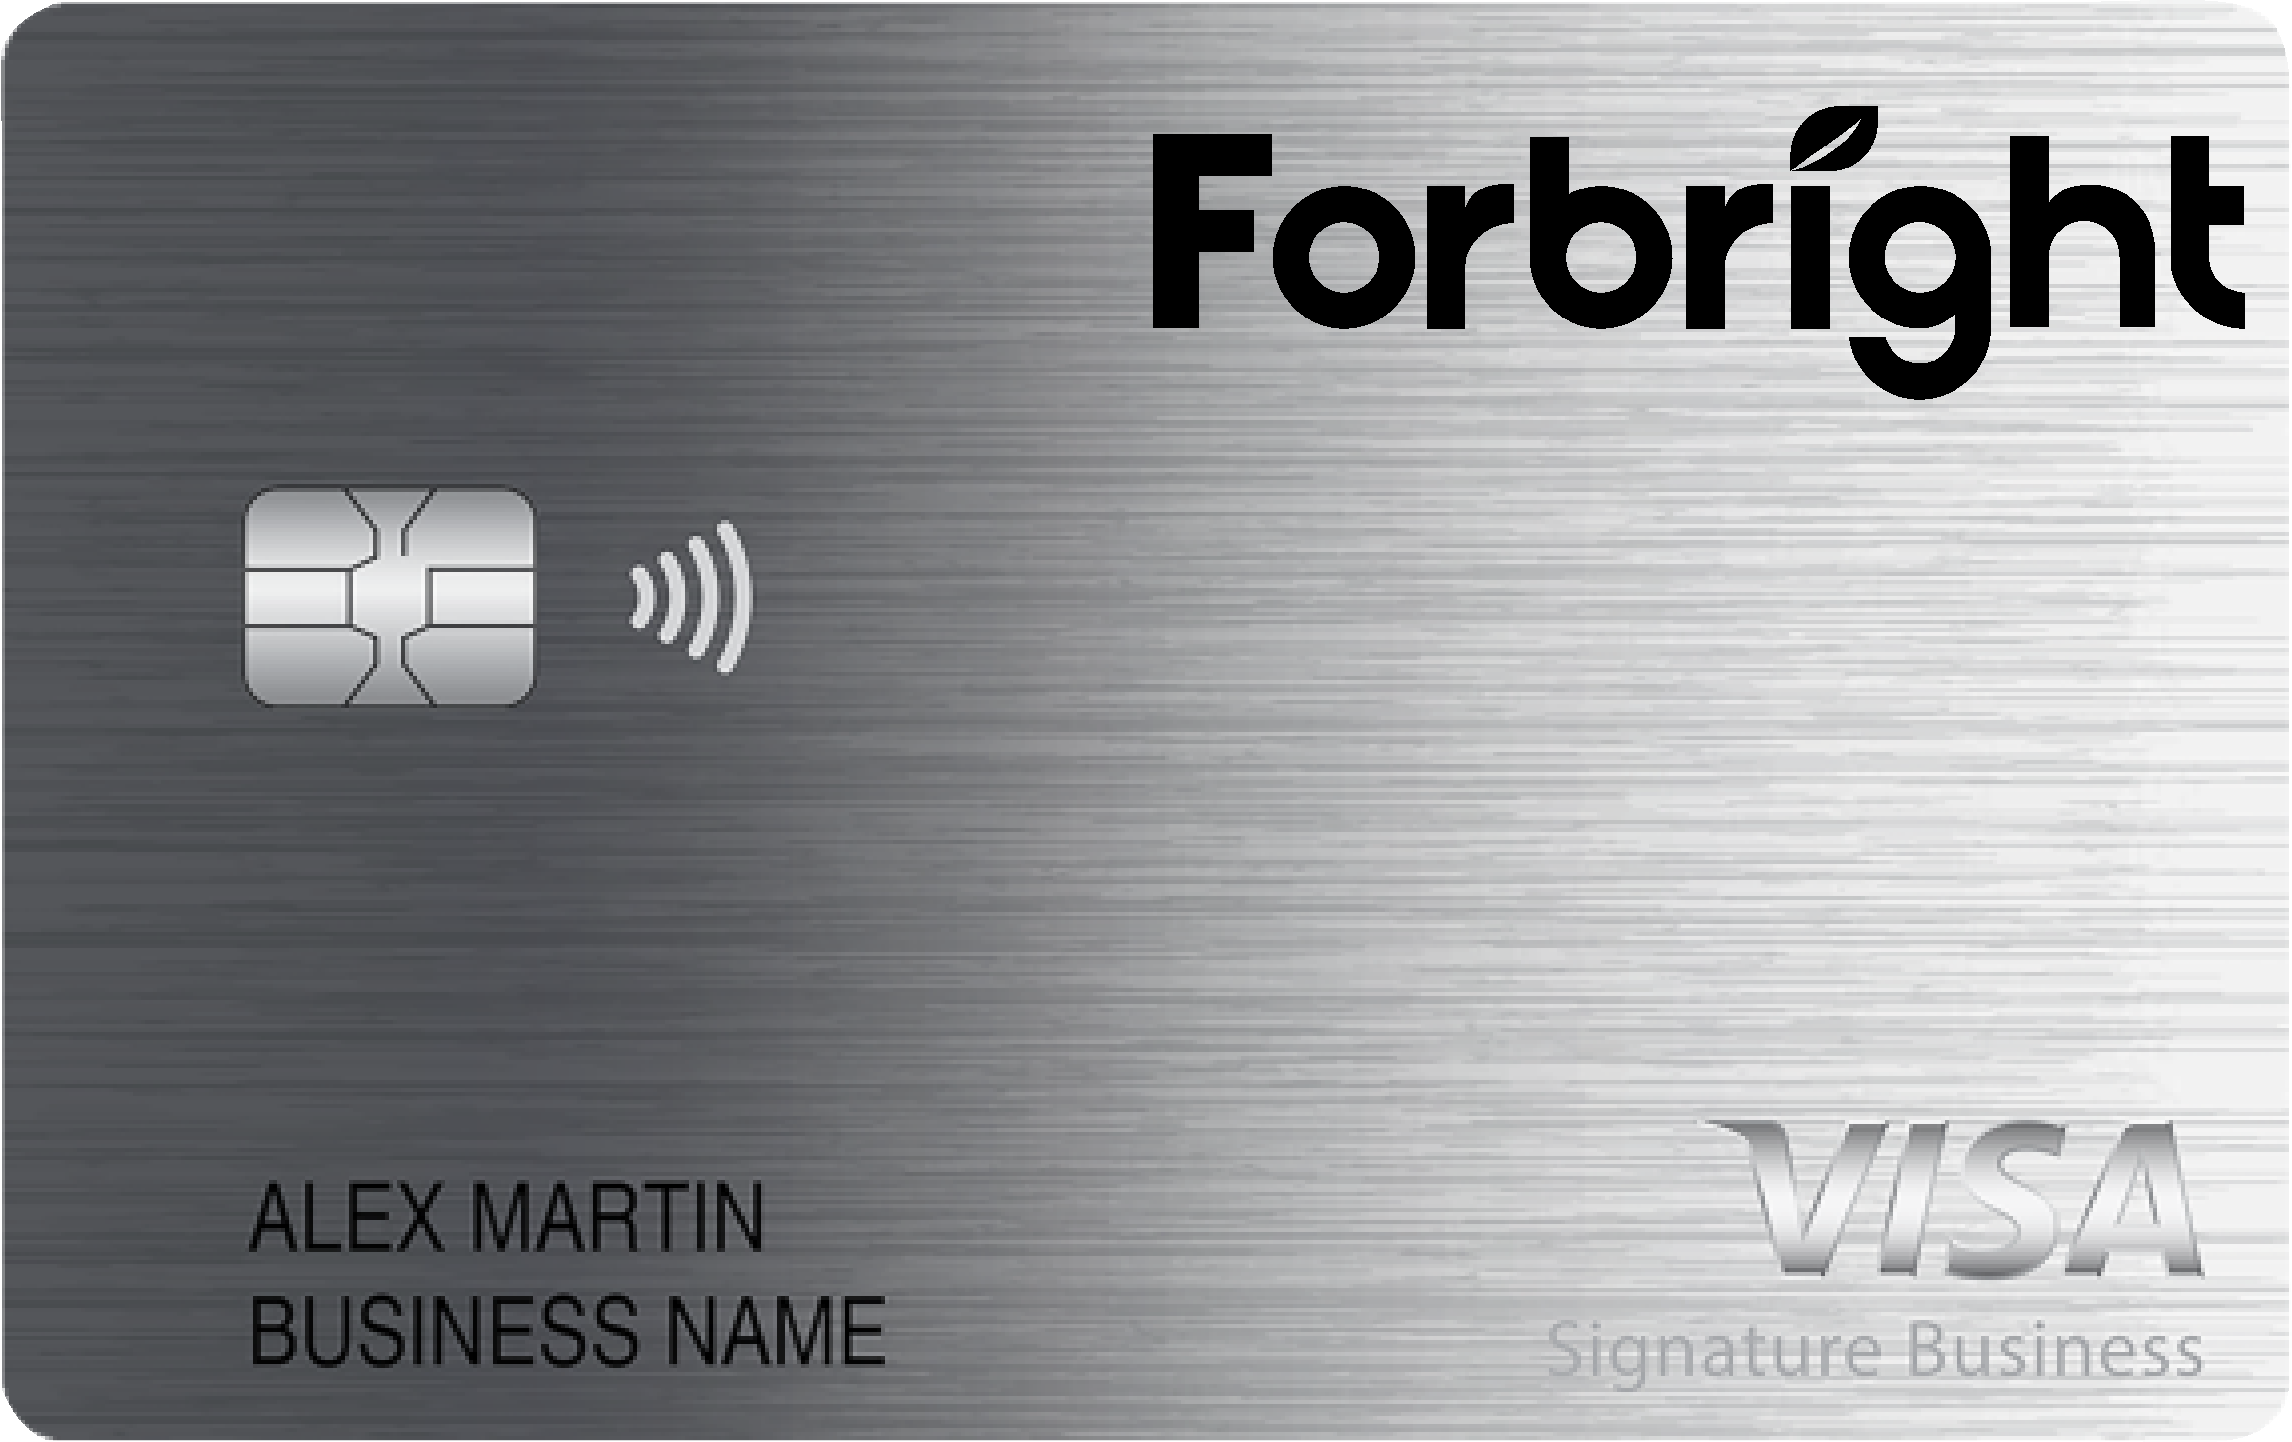 Forbright Bank Smart Business Rewards Card